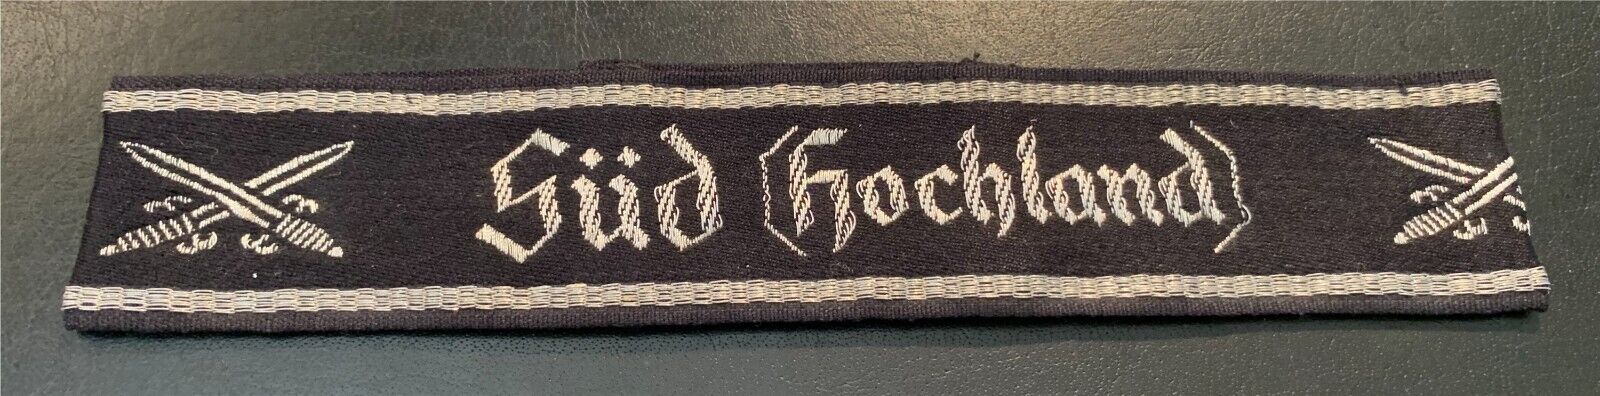 Ns Soldatenbund "sud (hochland" (staff) Cuff Title